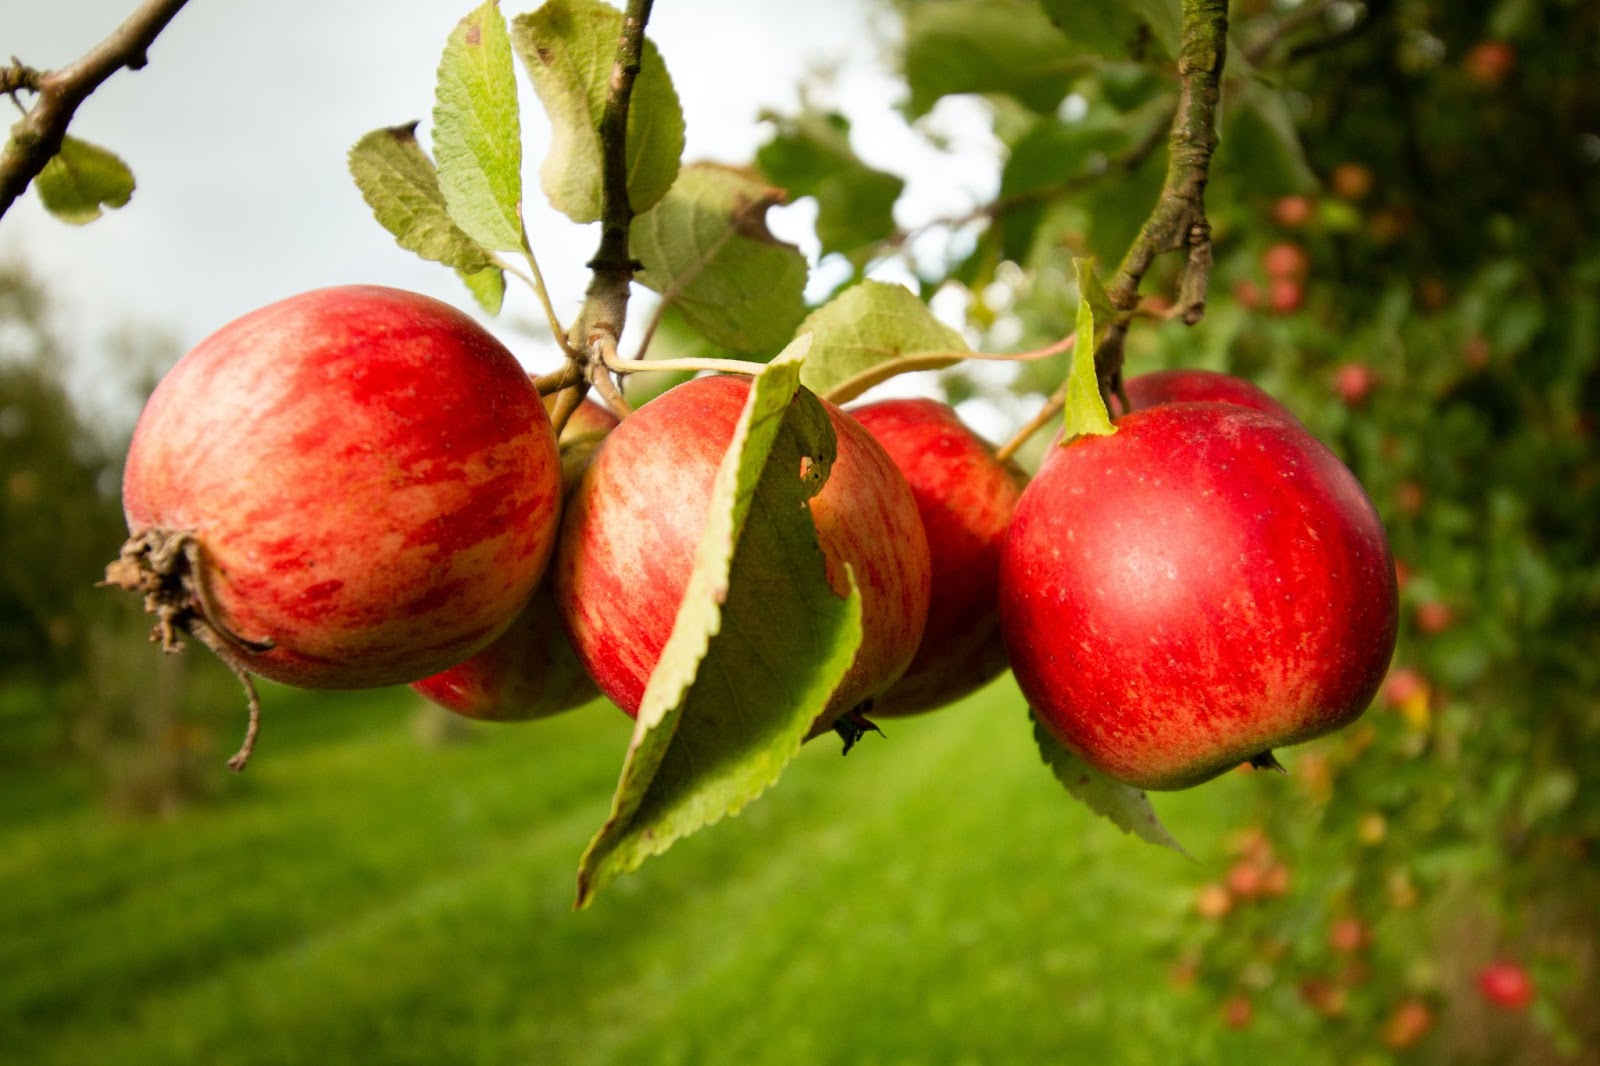 「カルヴァドス」の原料となるりんごのイメージ画像